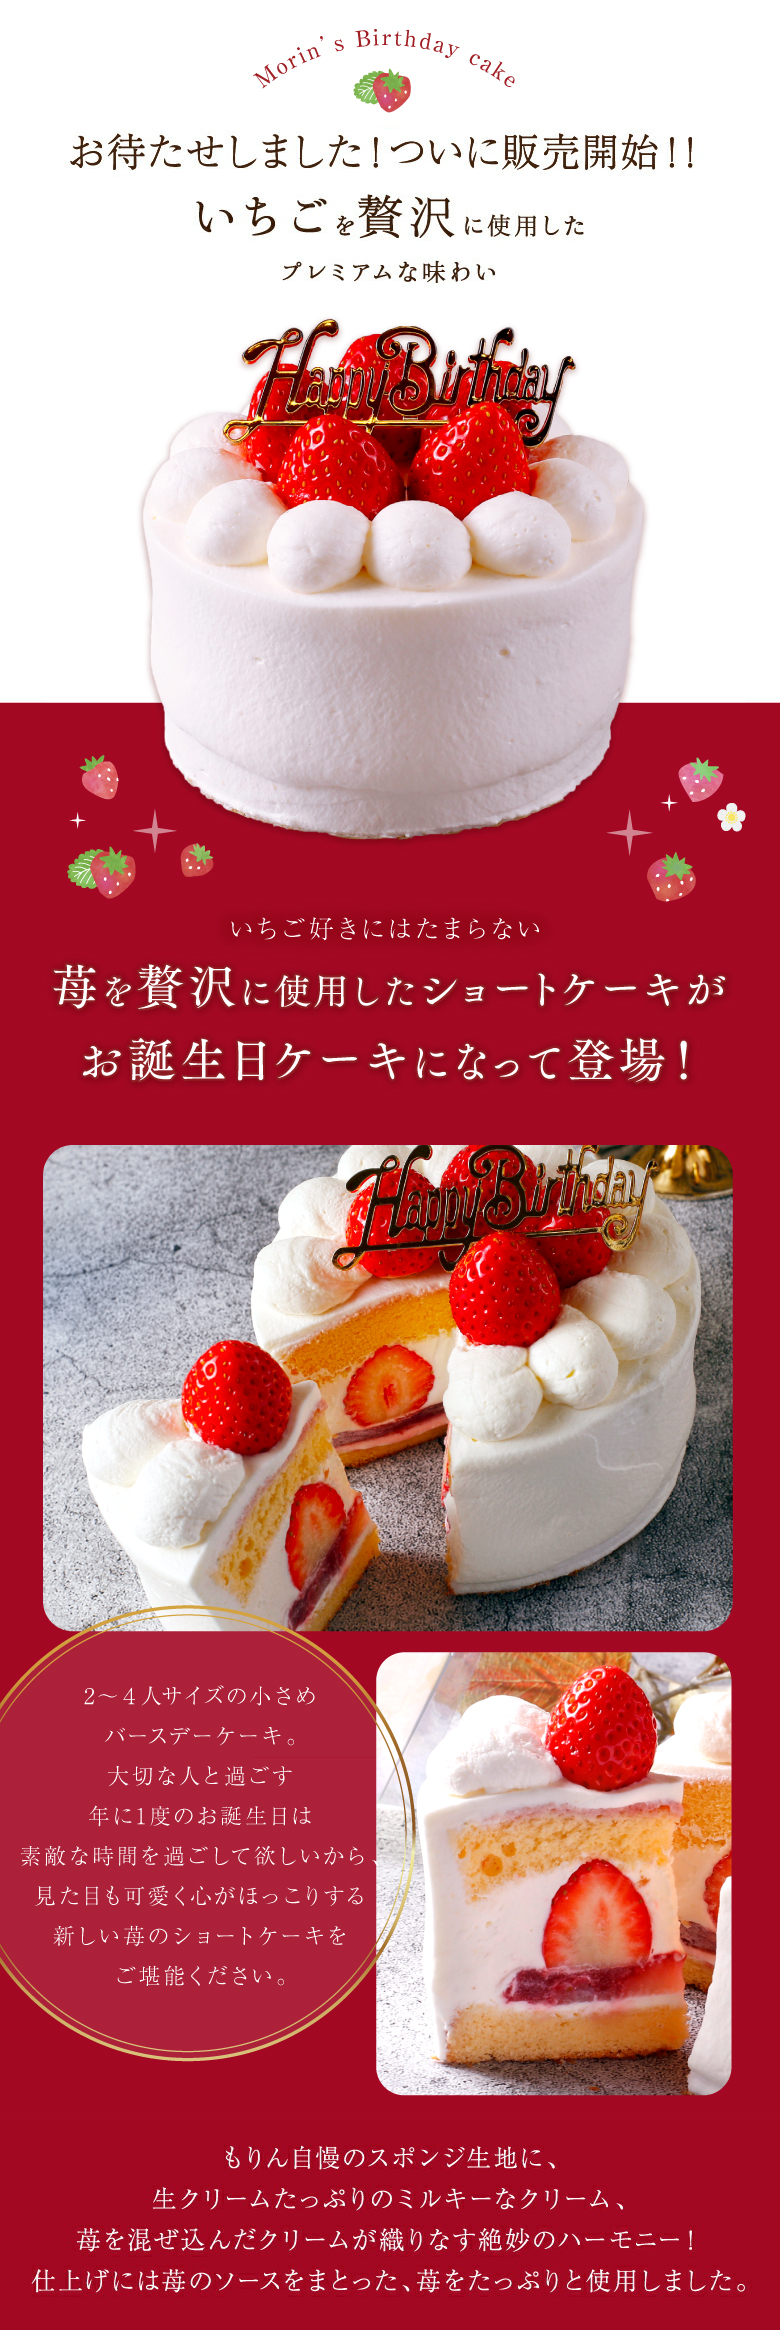 市場 送料無料 4号 4人 ショートケーキ イチゴ バースデーケーキ いちご お誕生日ケーキ 苺 12cm 2人